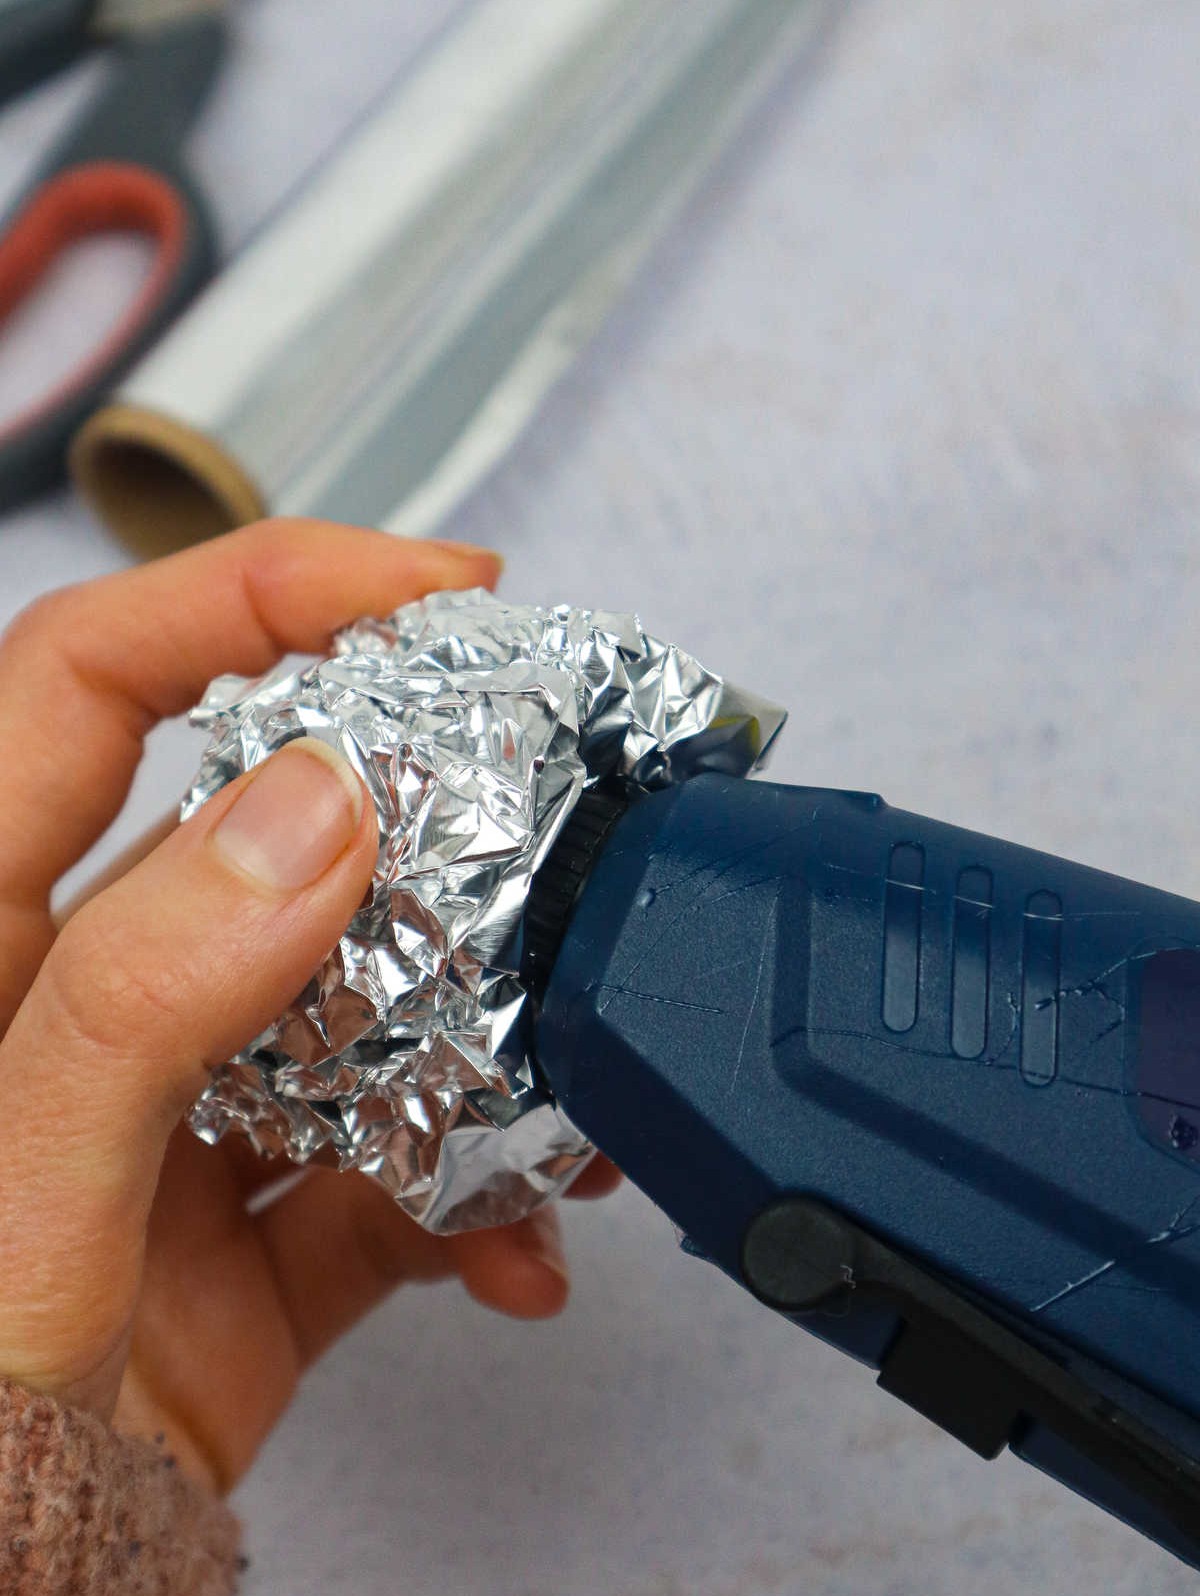 Clean the Glue Gun with Foil